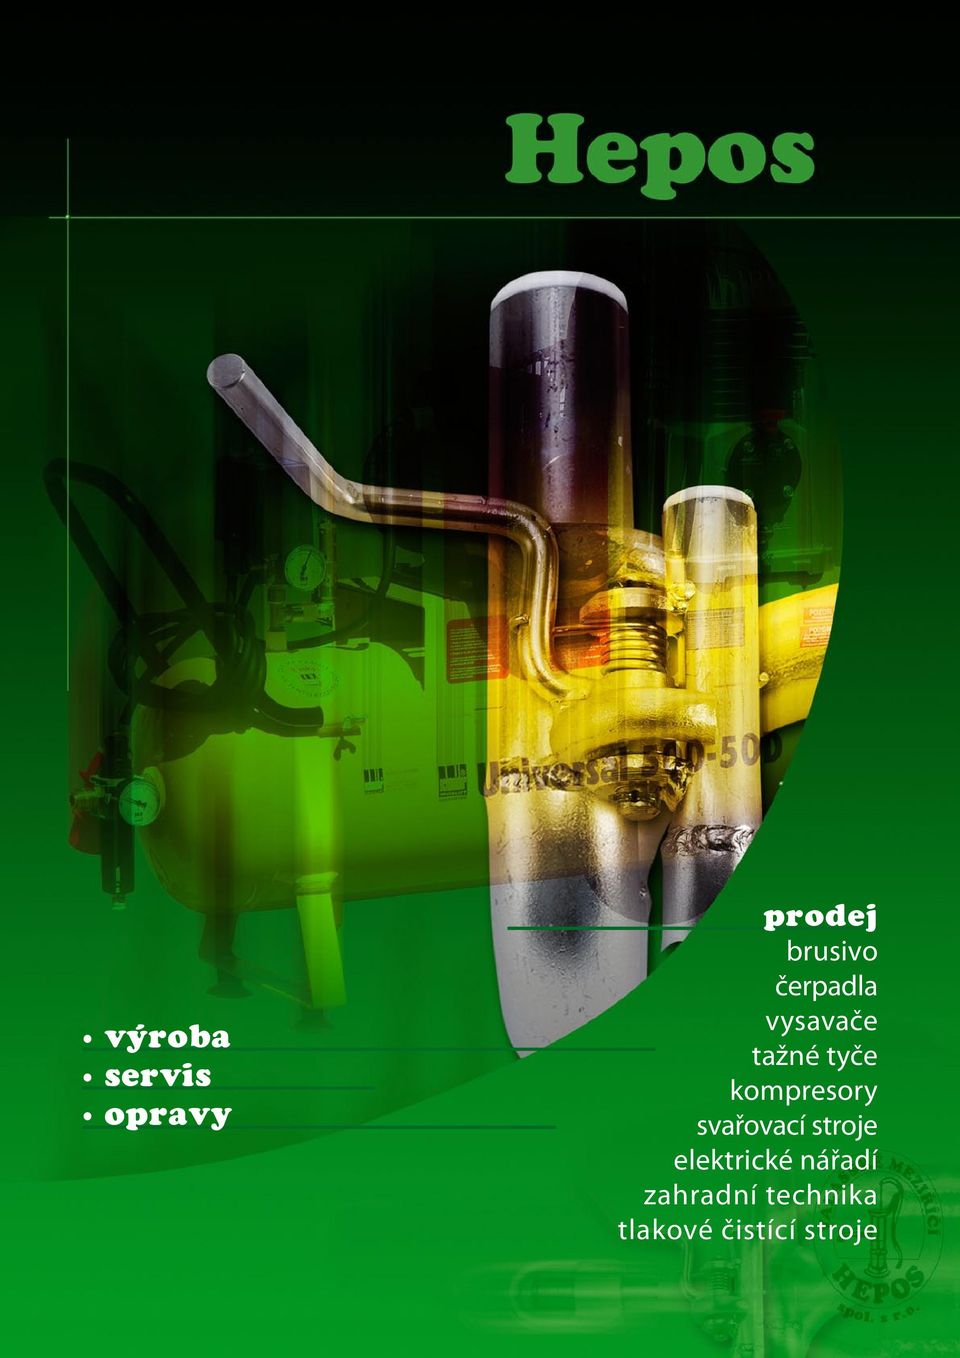 prodej brusivo čerpadla vysavače tažné tyče kompresory svařovací stroje  elektrické nářadí zahradní technika tlakové čistící stroje - PDF Stažení  zdarma